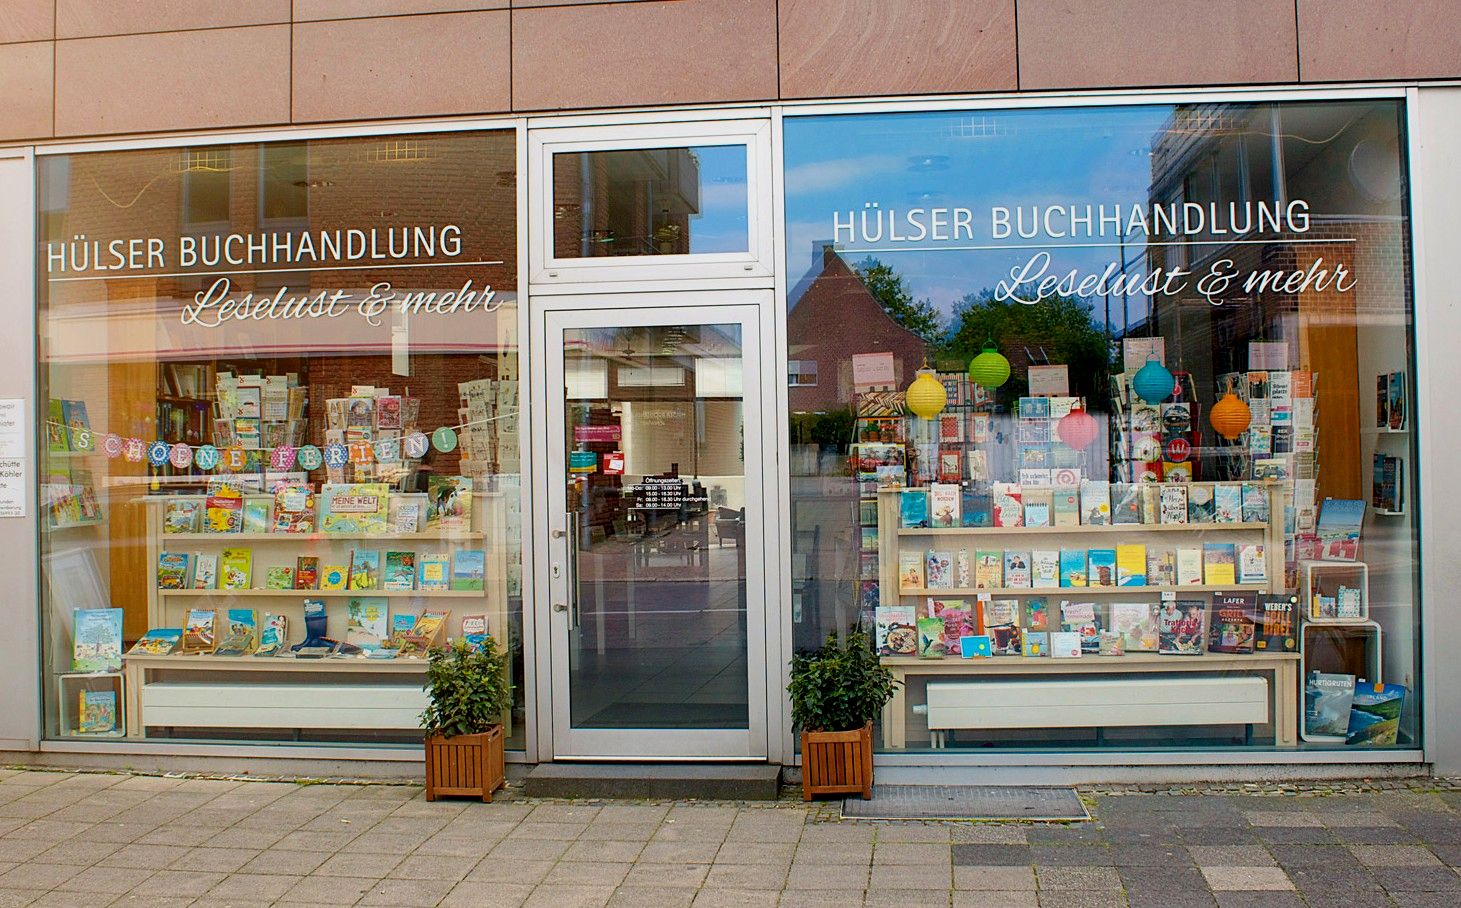 Hülser Buchhandlung